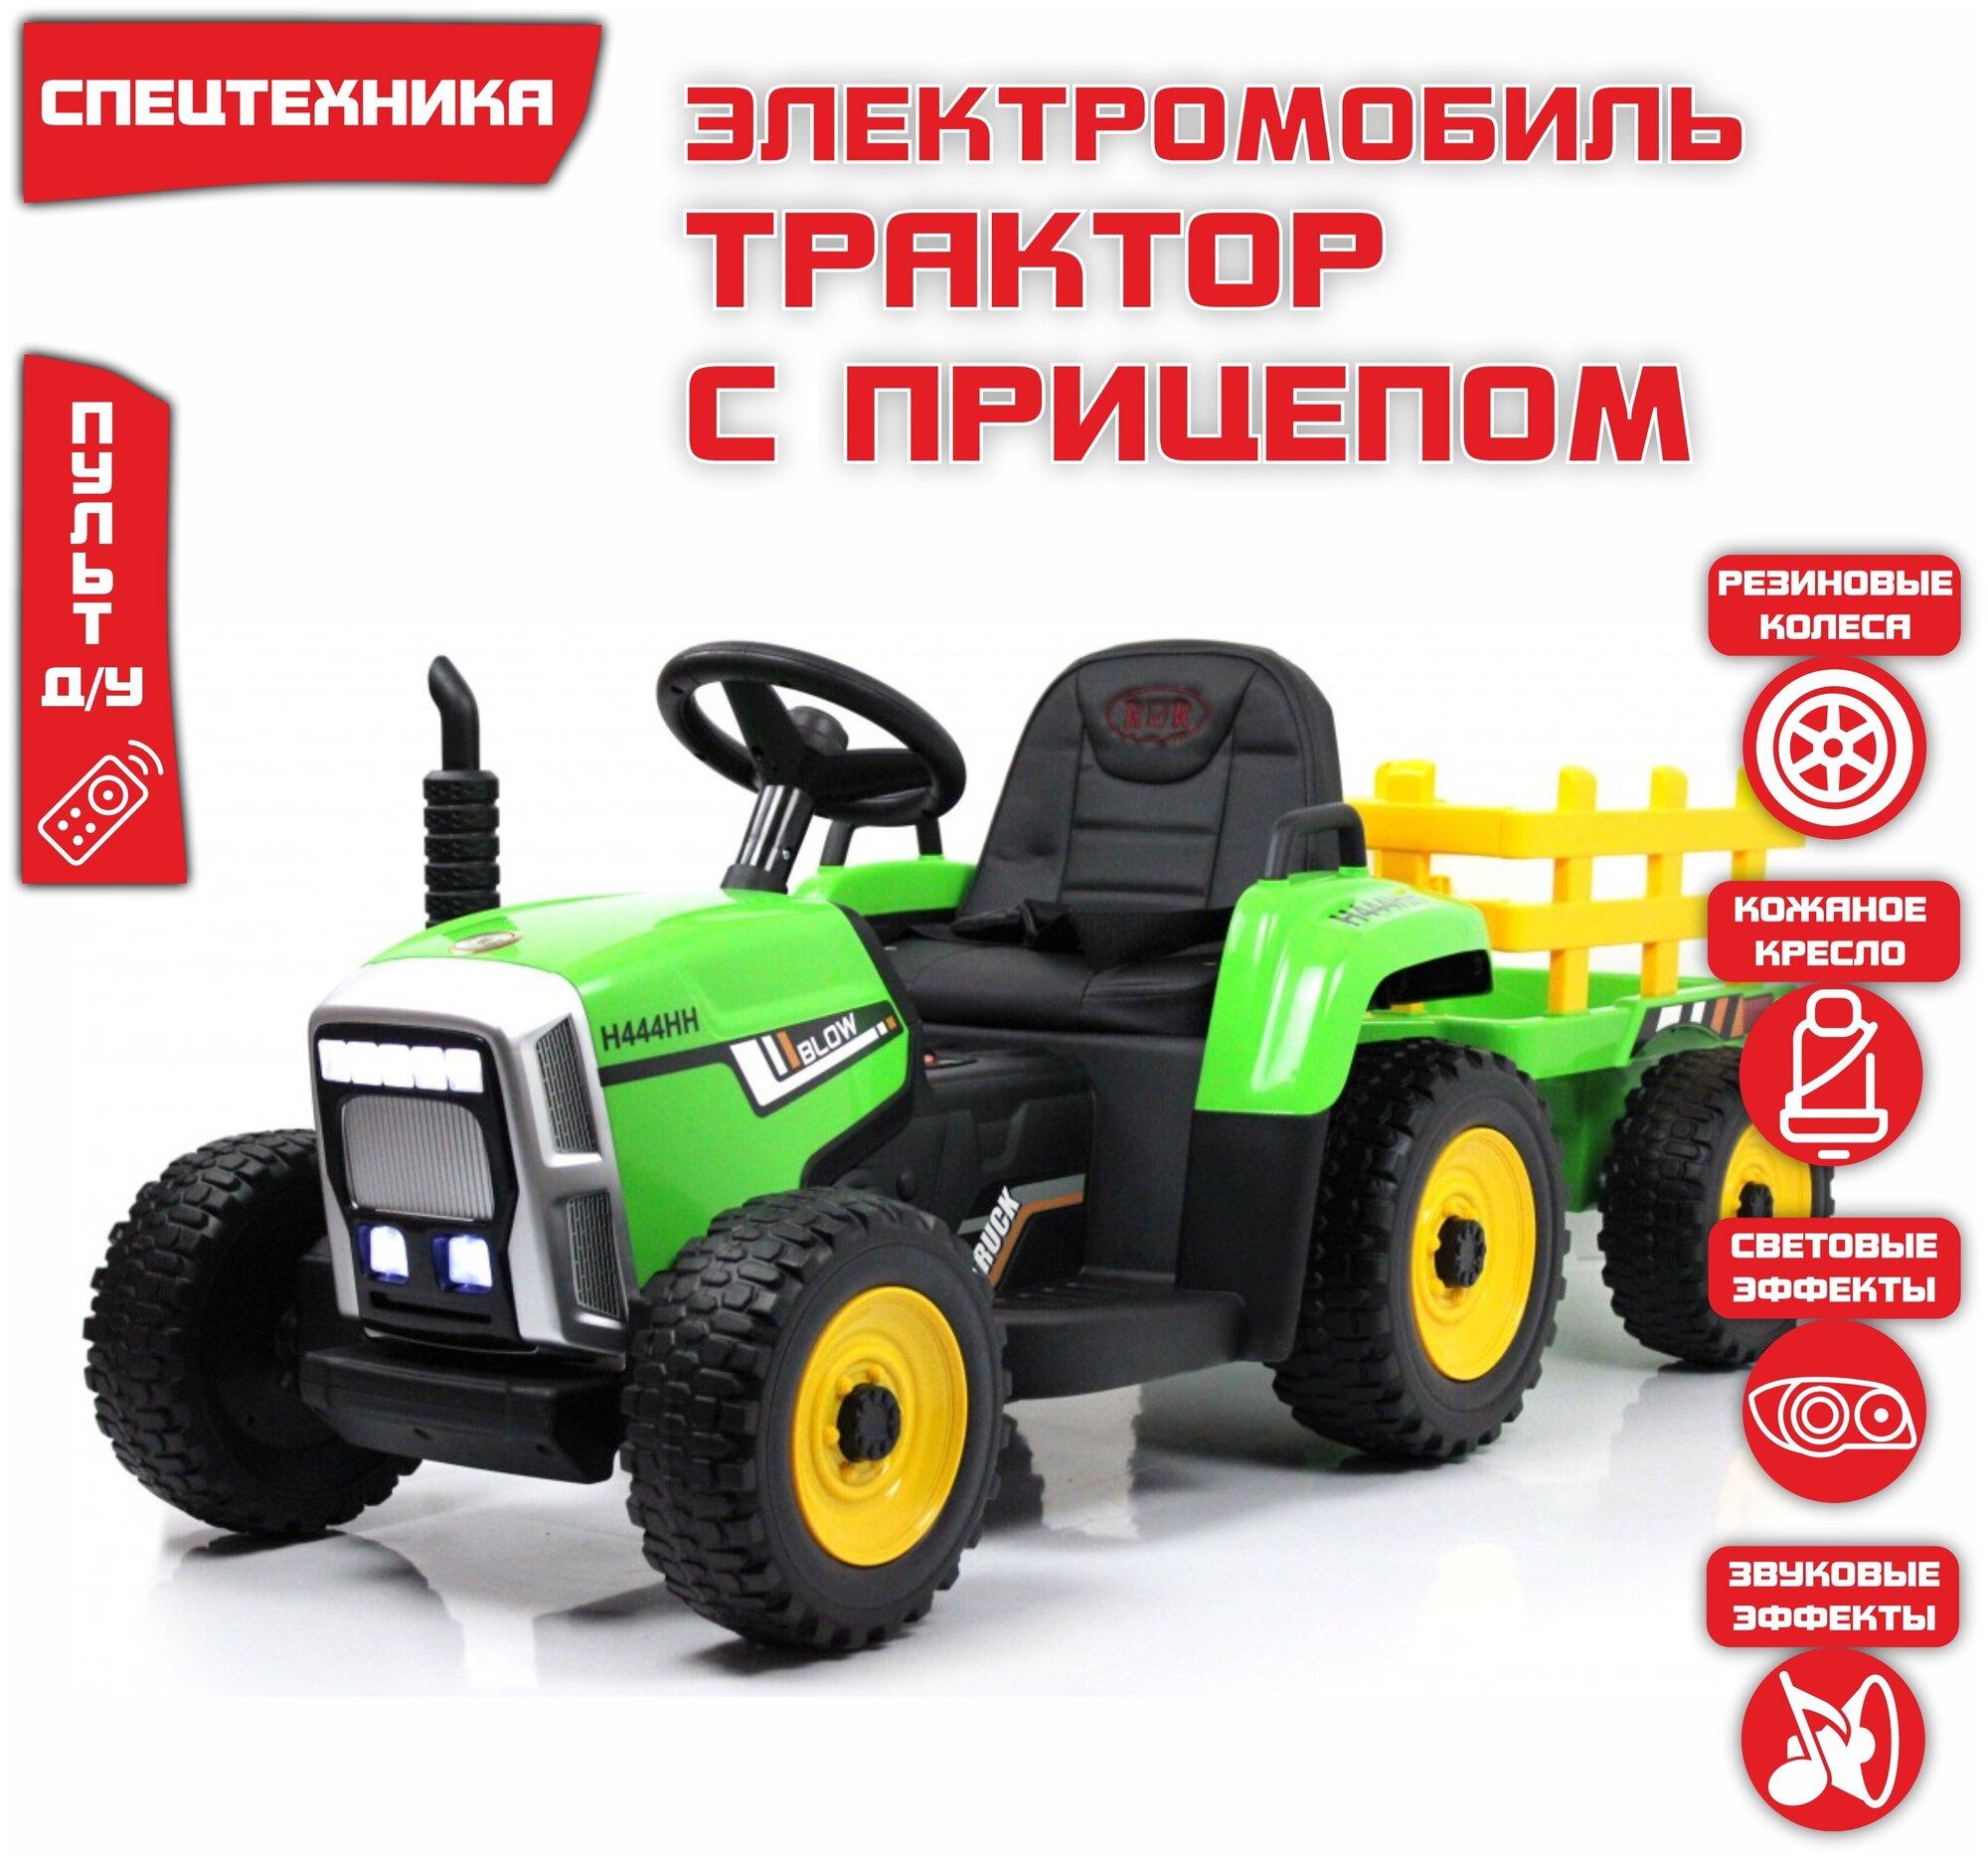 Детский электромобиль-трактор RiverToys H444HH зеленый